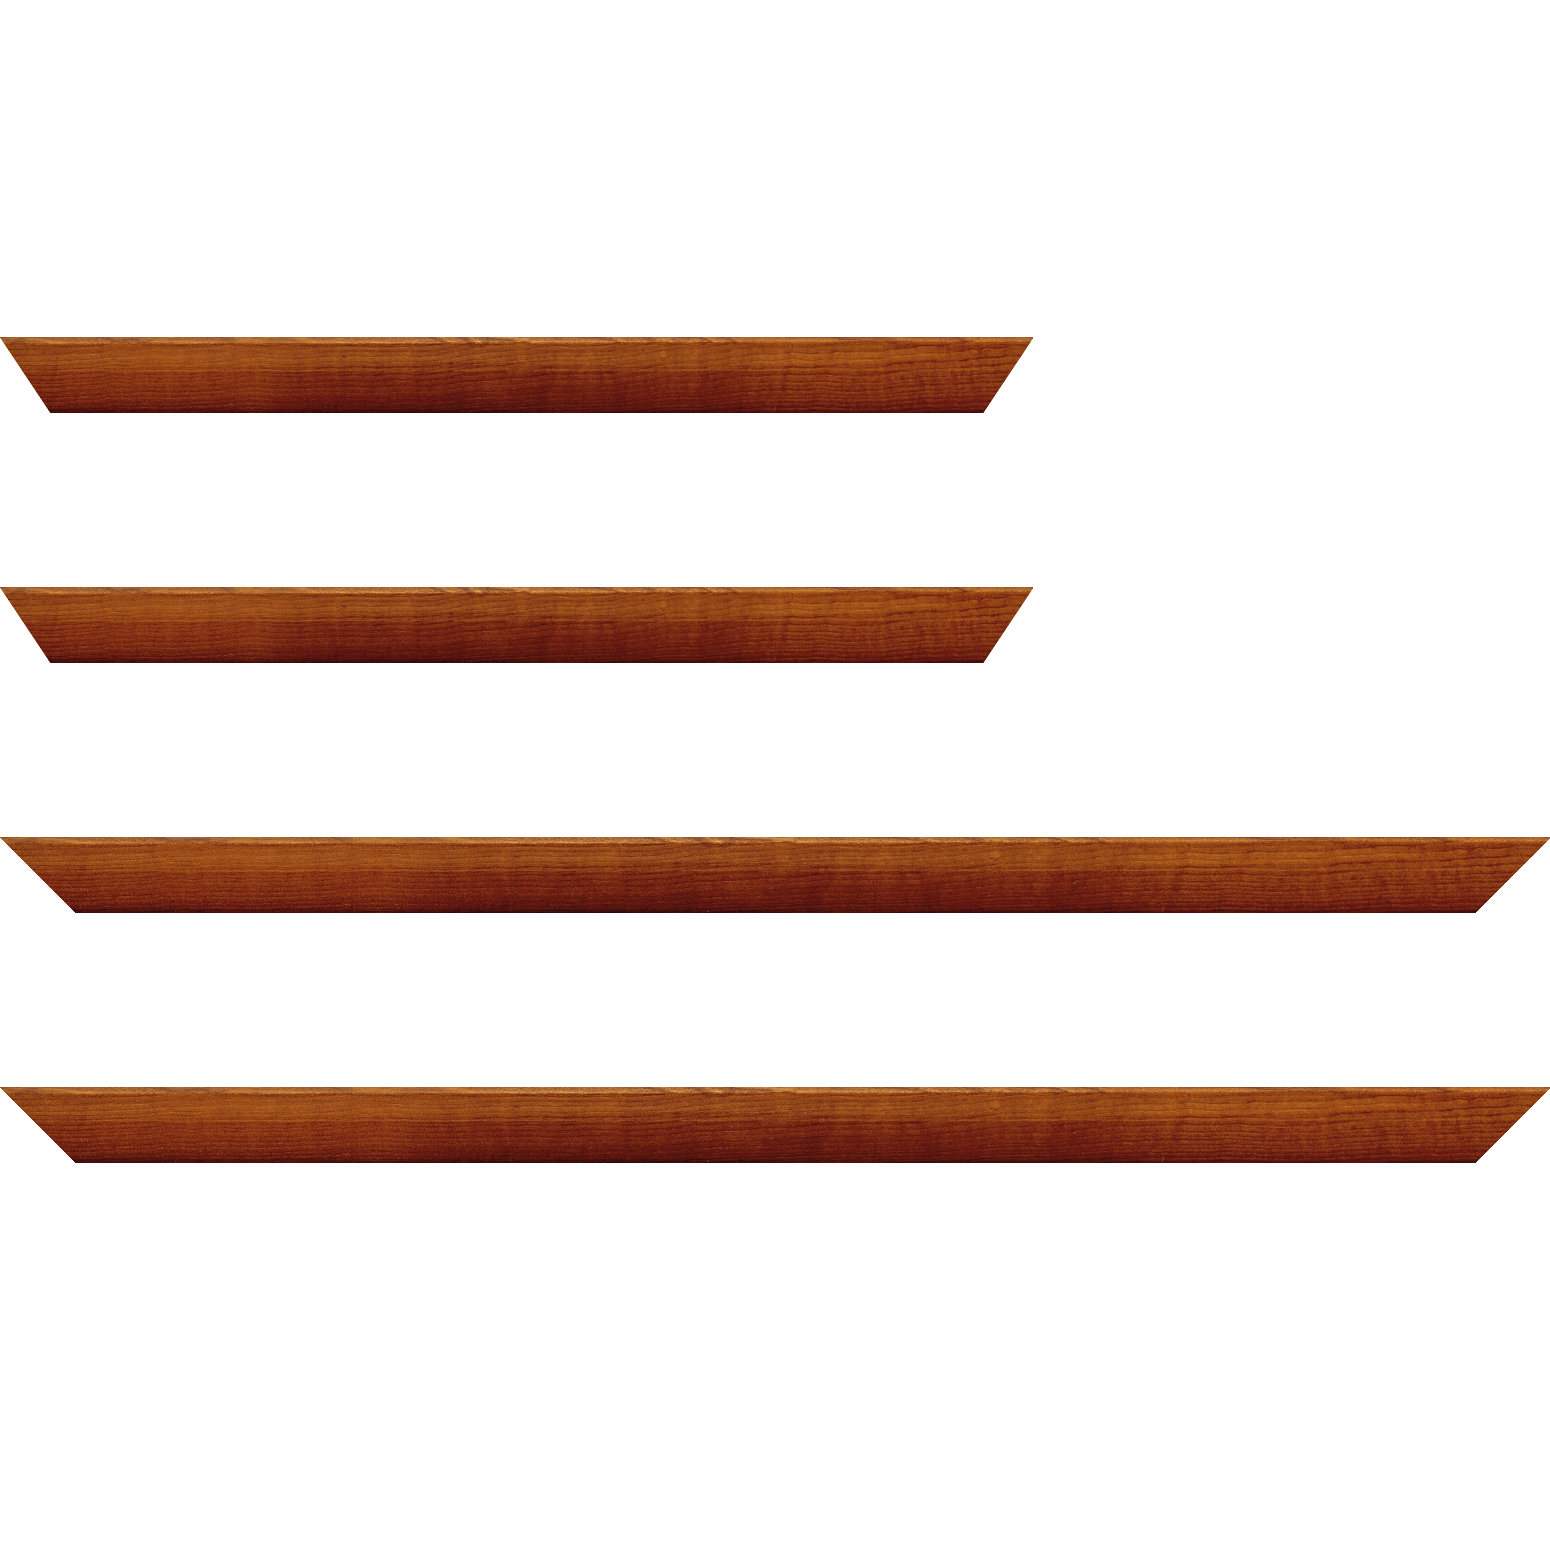 Baguette bois profil arrondi en pente plongeant largeur 2.4cm couleur marron miel finition vernis brillant,veine du bois  apparent (pin) , - 59.4x84.1